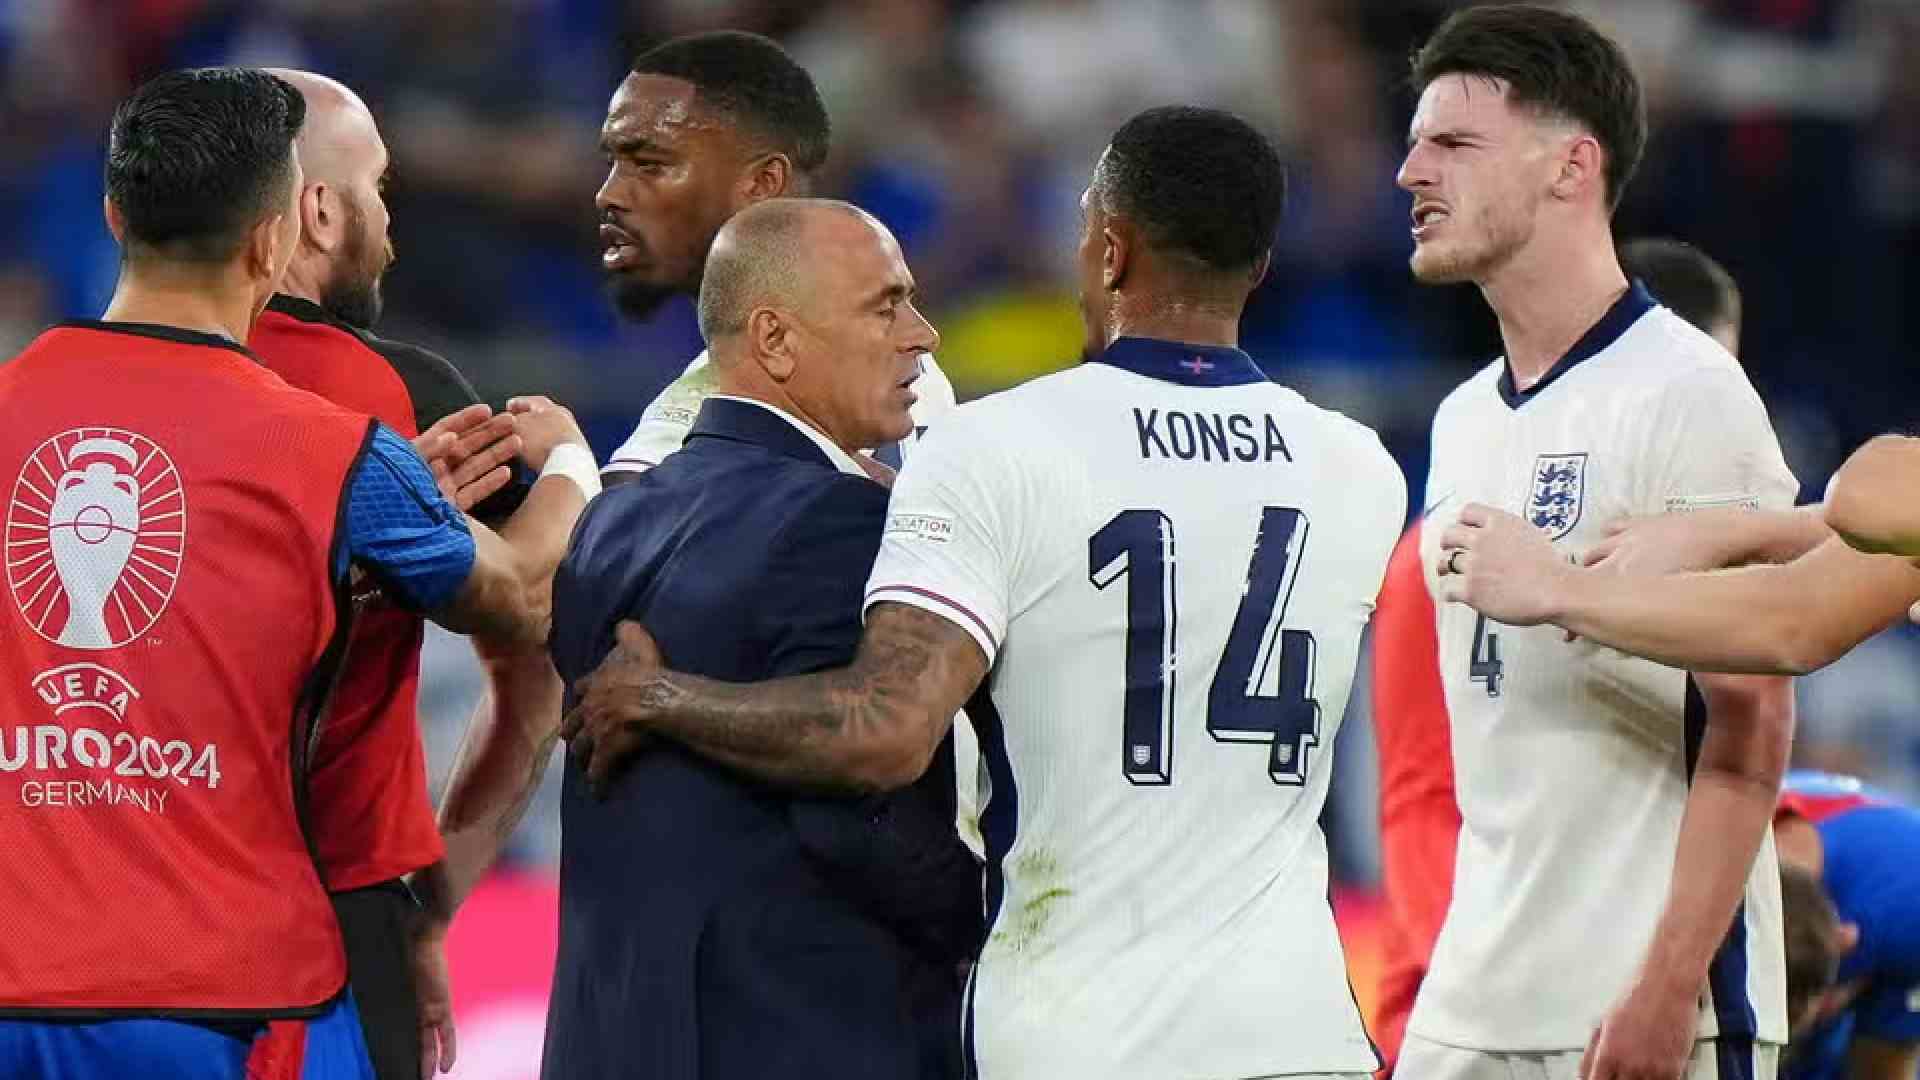 Rice nella bufera: pensati insulti a Calzona nel finale di Inghilterra-Slovacchia